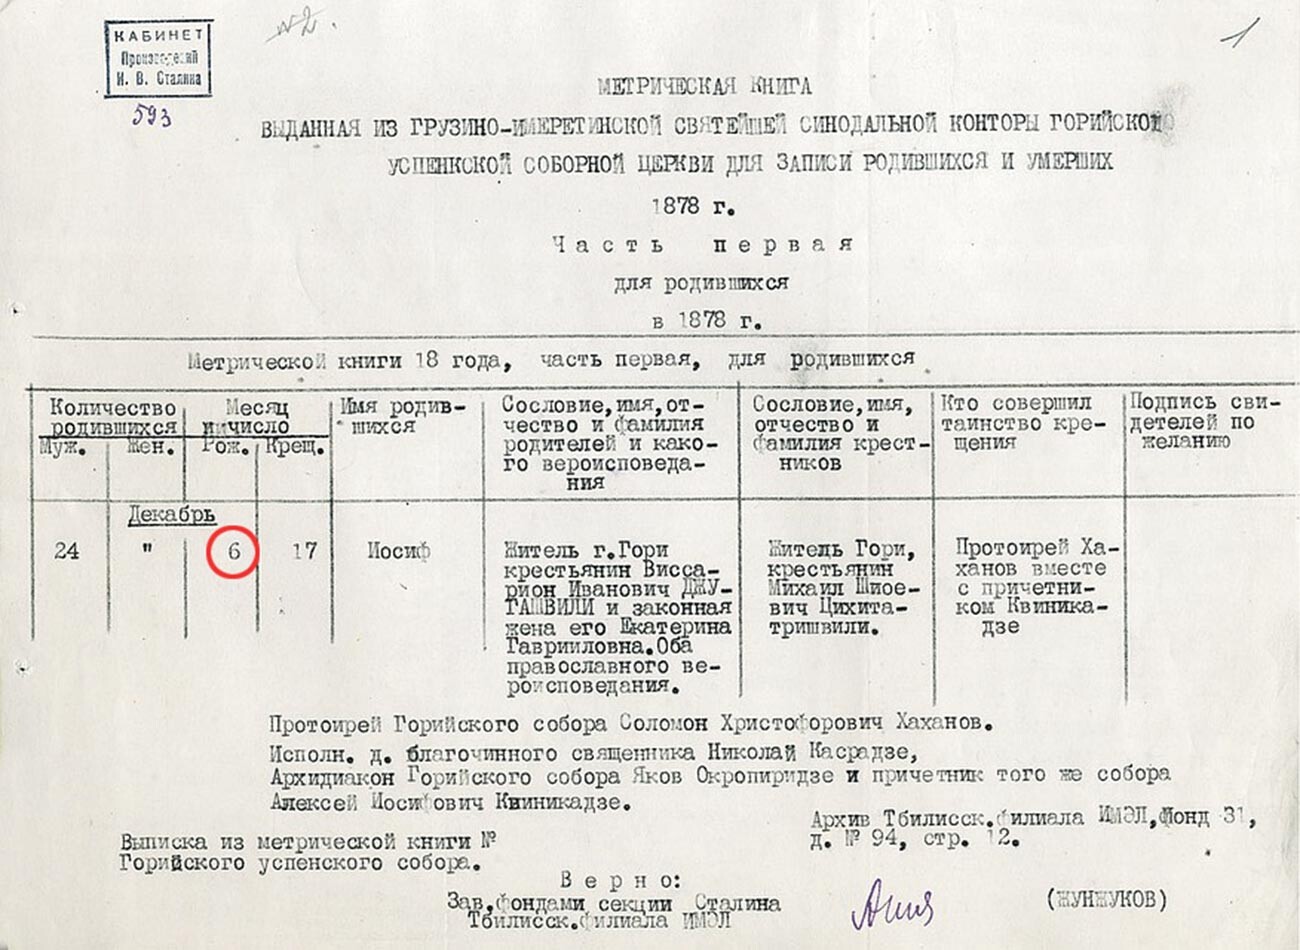 Il registro parrocchiale della chiesa dell'Assunzione di Gori, che attesta la nascita di Stalin il 6 dicembre